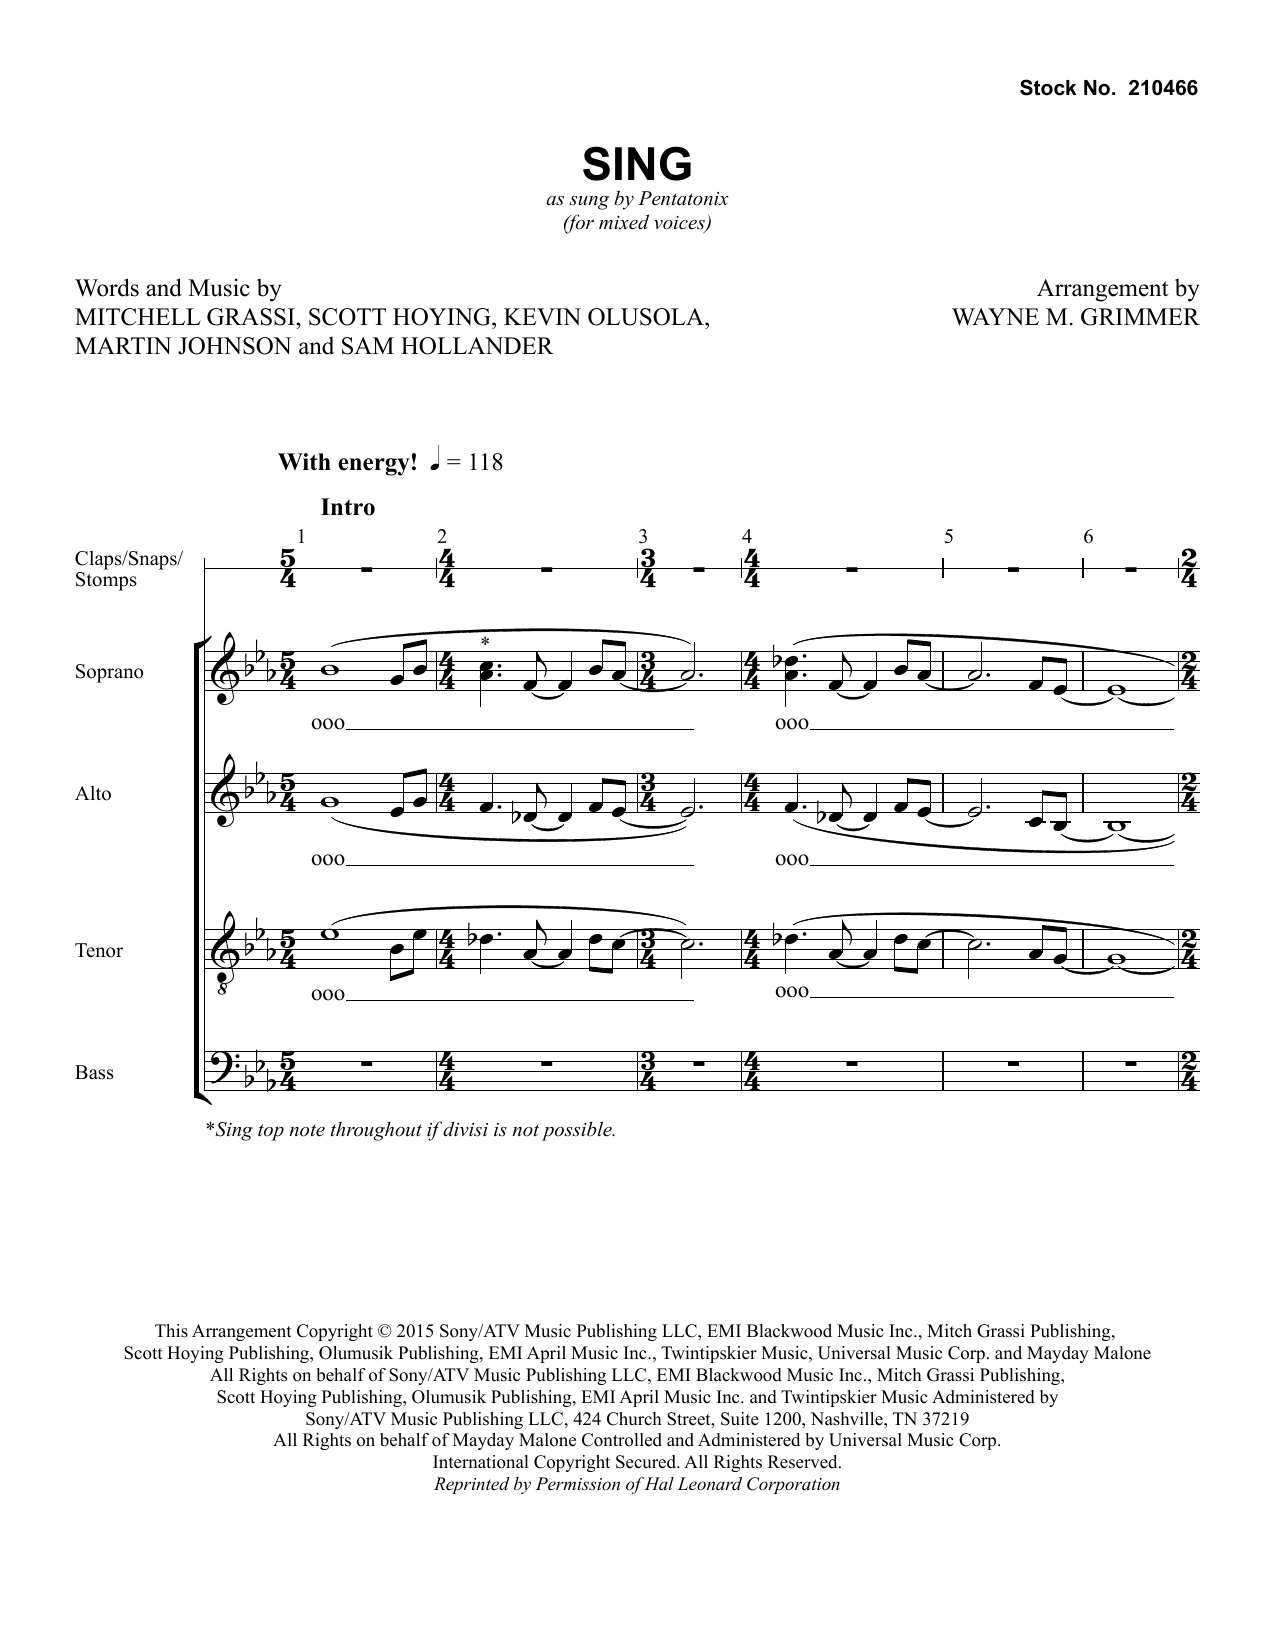 Download Pentatonix Sing (arr. Wayne Grimmer) Sheet Music